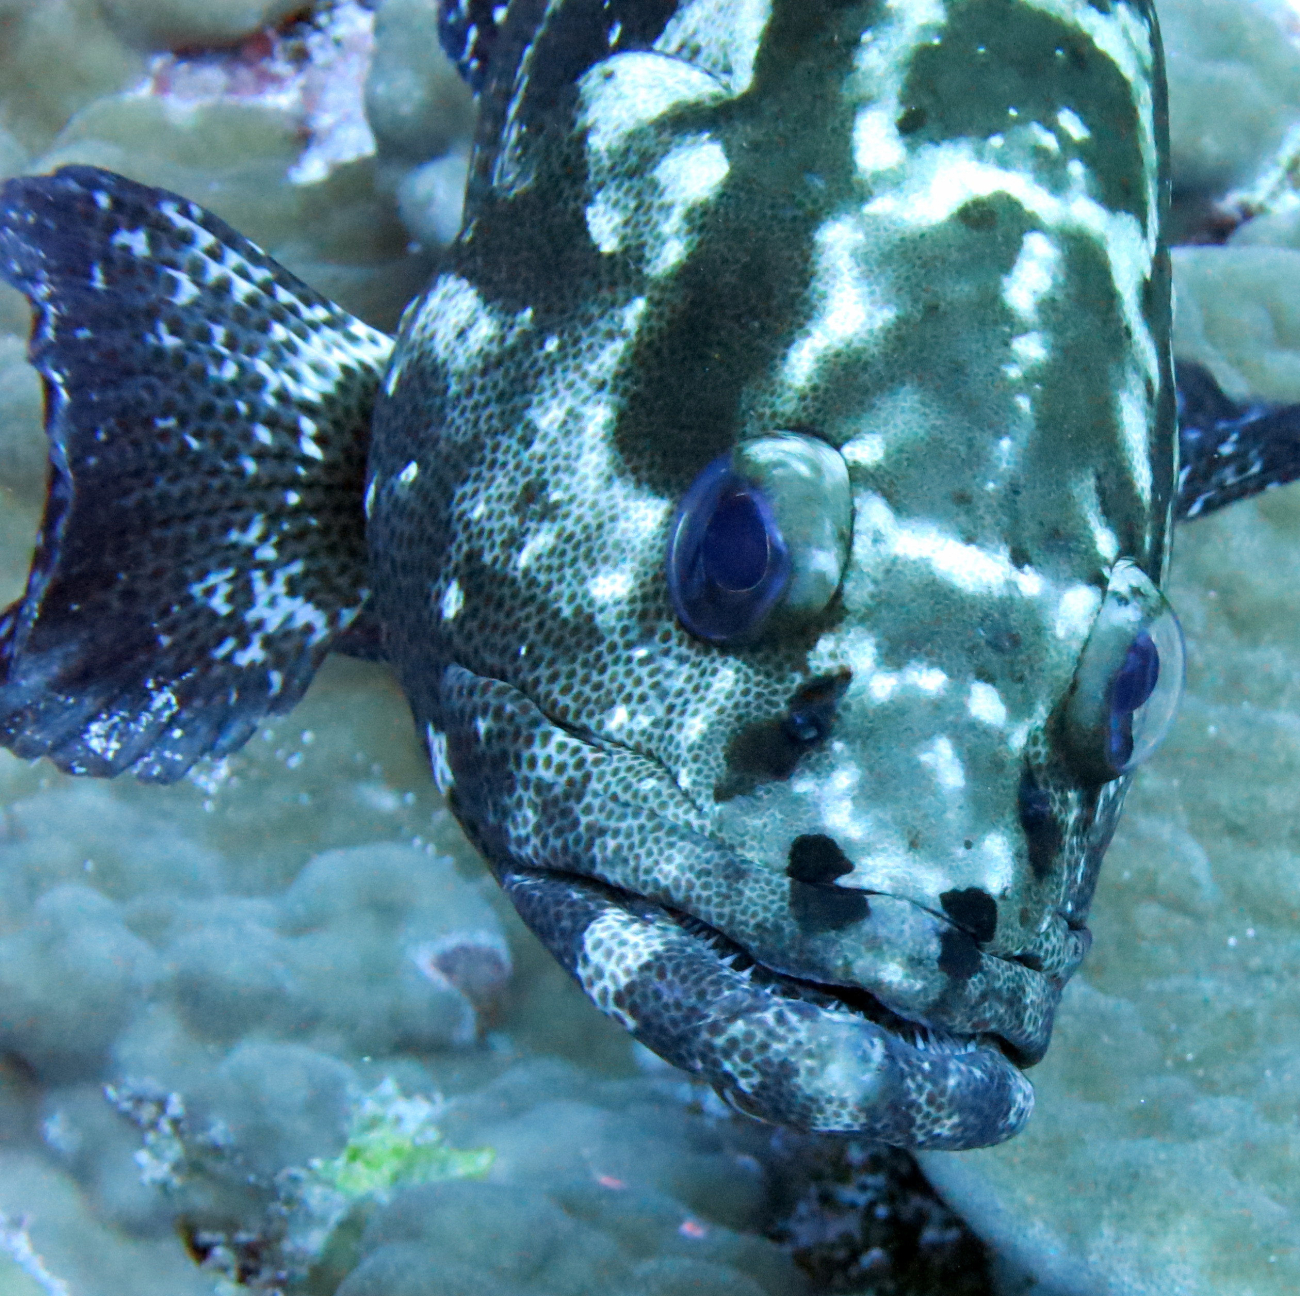 Camouflage grouper (Epinephelus polyphekadion)